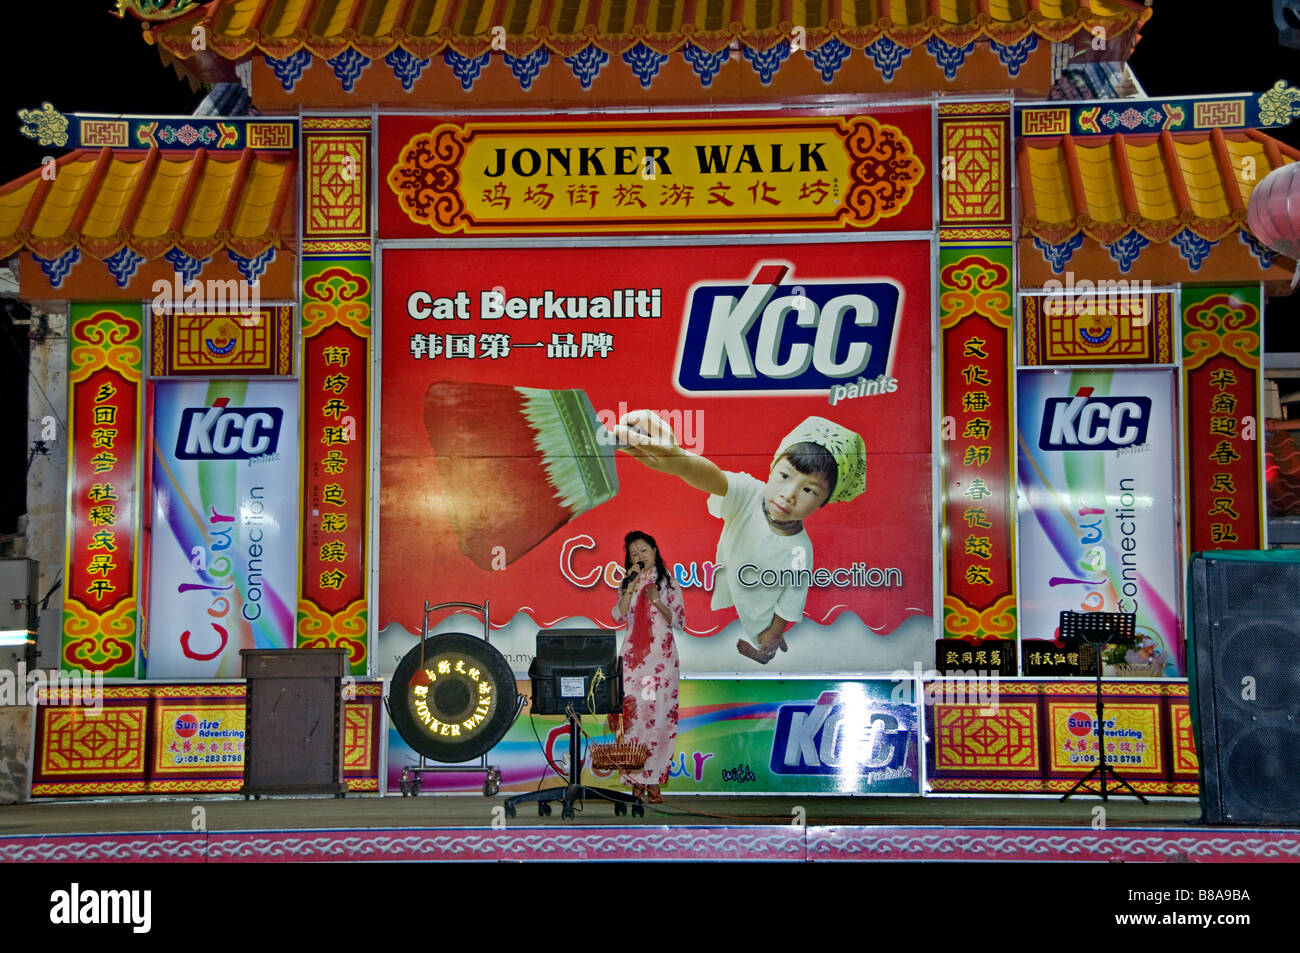 Karaoke-Sänger Sängerin Song Vokalkonzert singen Wettbewerb Malacca Malaysia Chinatown Nacht Markt Basar Straße China Chinesisch Stockfoto